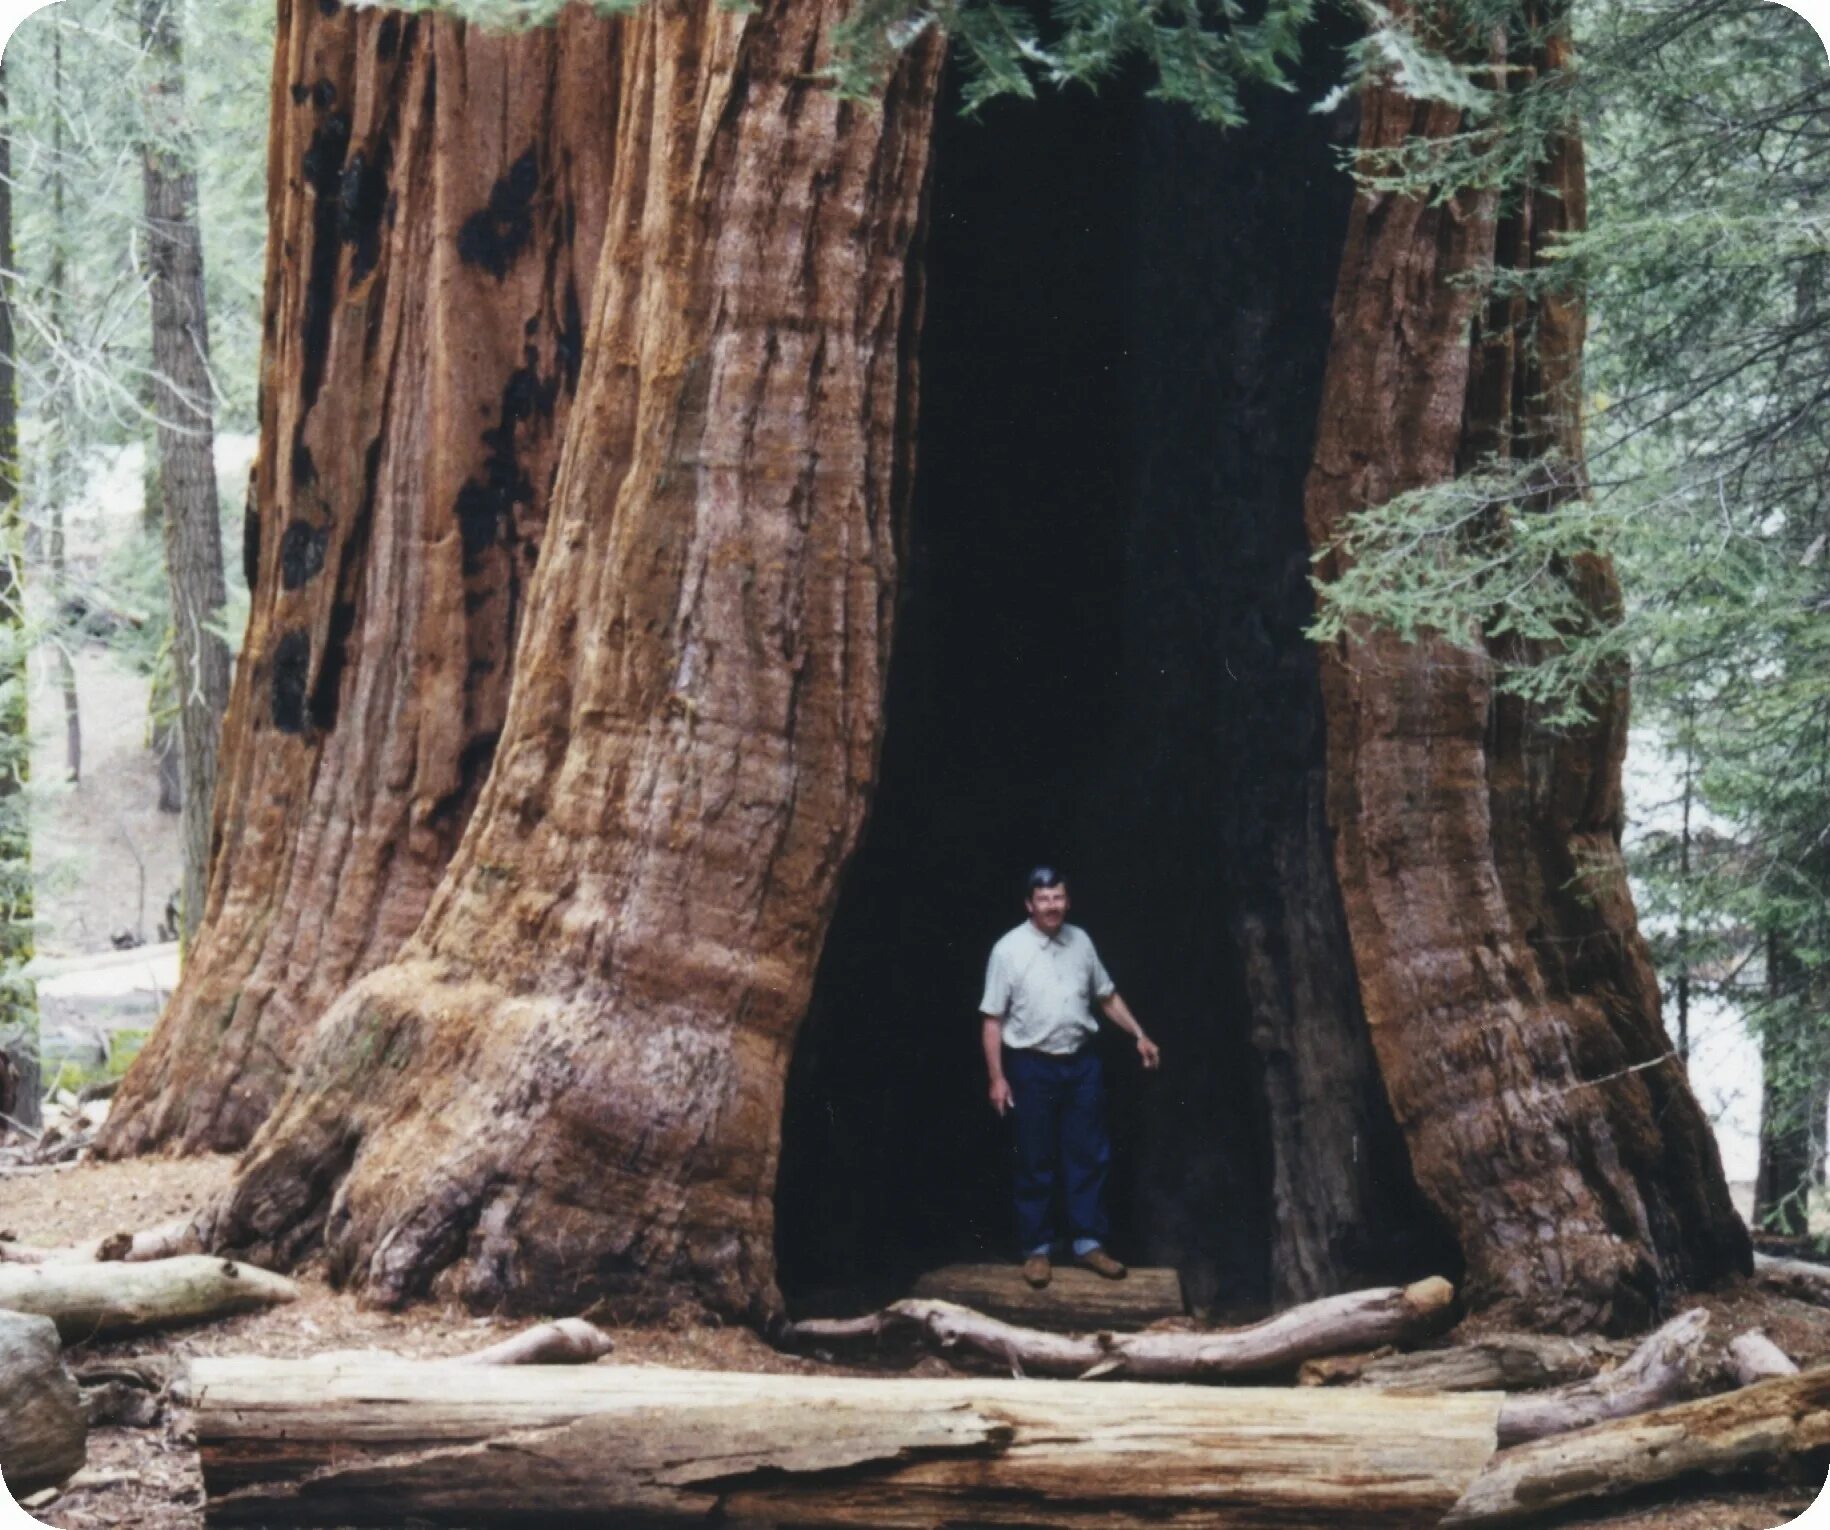 Очень толстой дерево. Секвойя дерево. Самое большое дерево в мире Секвойя. Калифорнийская Секвойя Гиперион. Секвойя дерево самое толстое дерево.